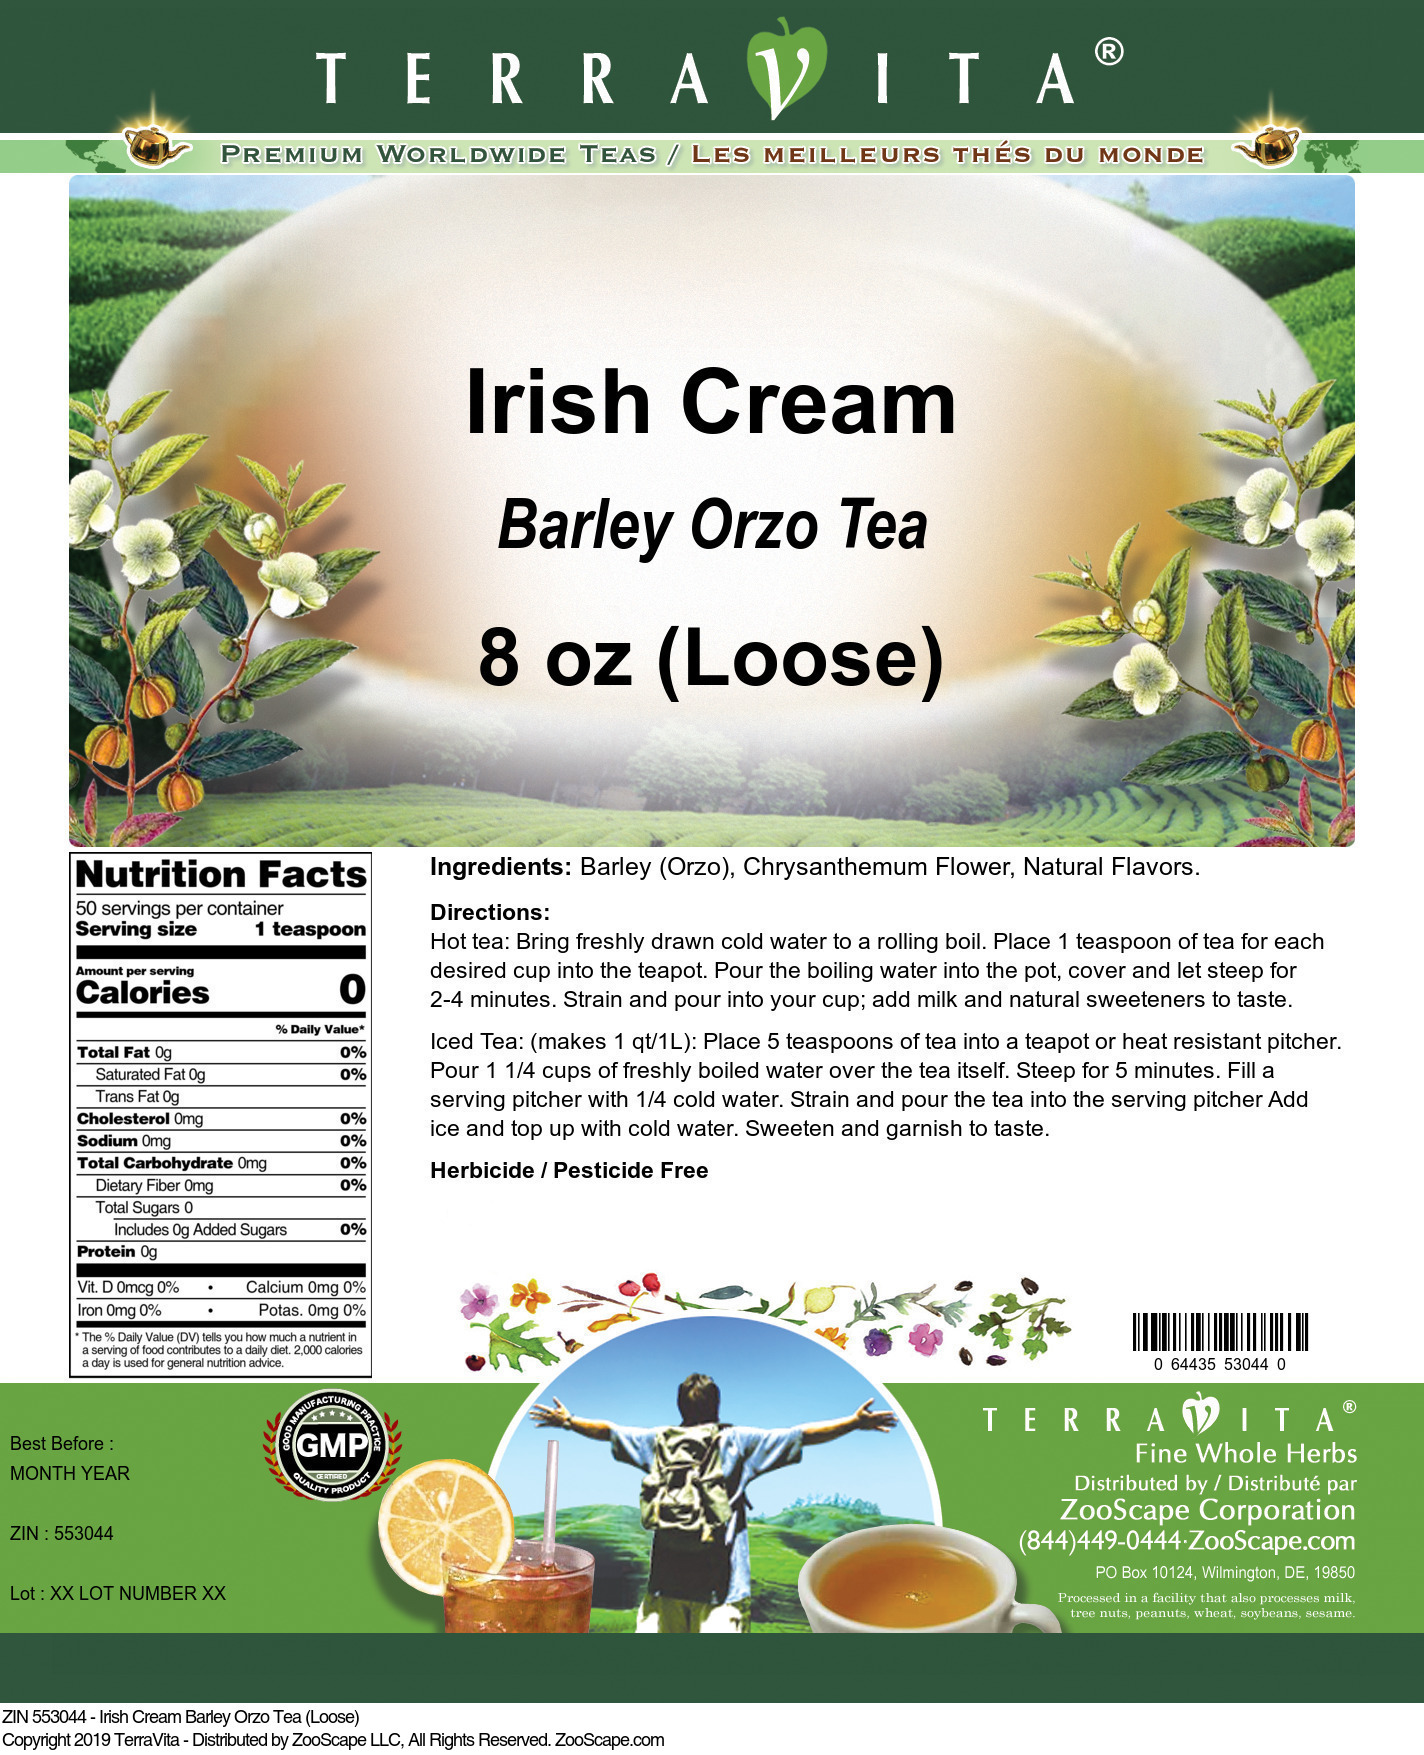 Irish Cream Barley Orzo Tea (Loose) - Label